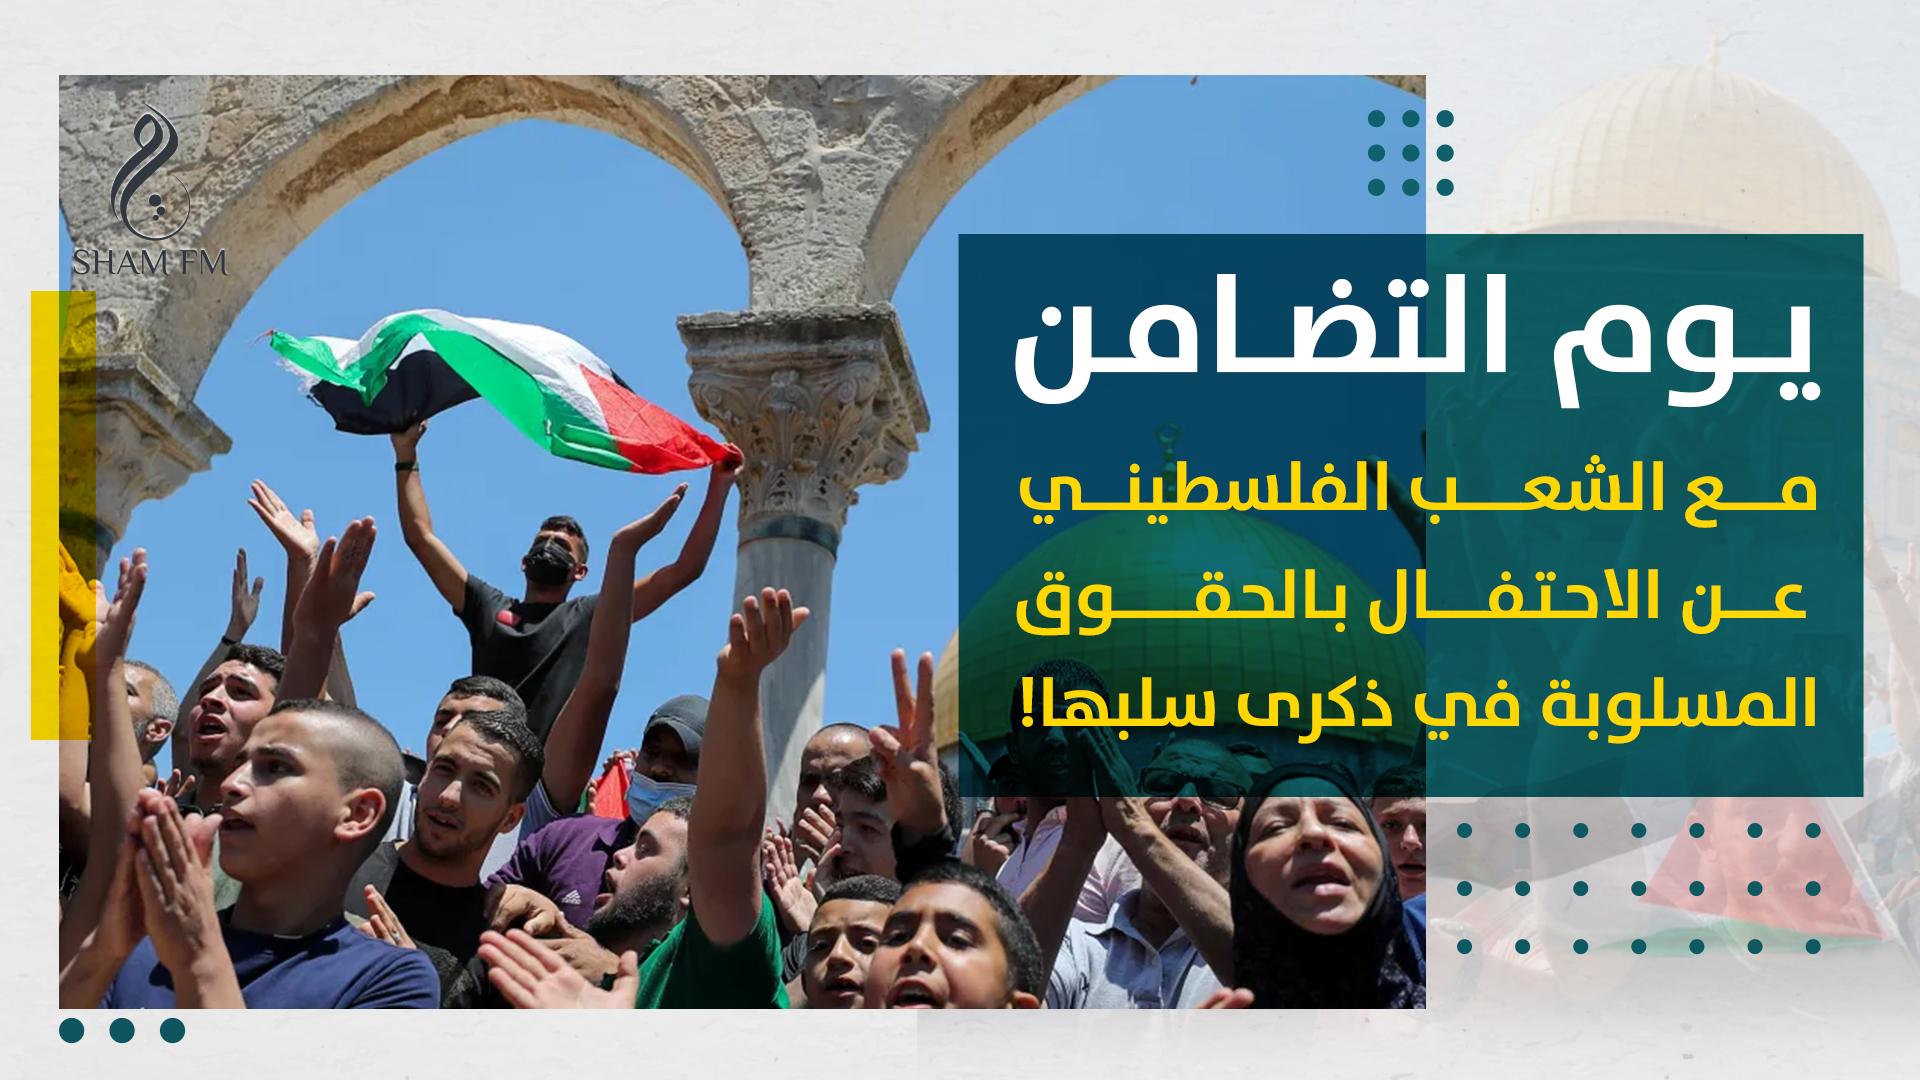 يوم التضامن مع الشعب الفلسطيني.. عن الاحتفال بالحقوق المسلوبة في ذكرى سلبها!